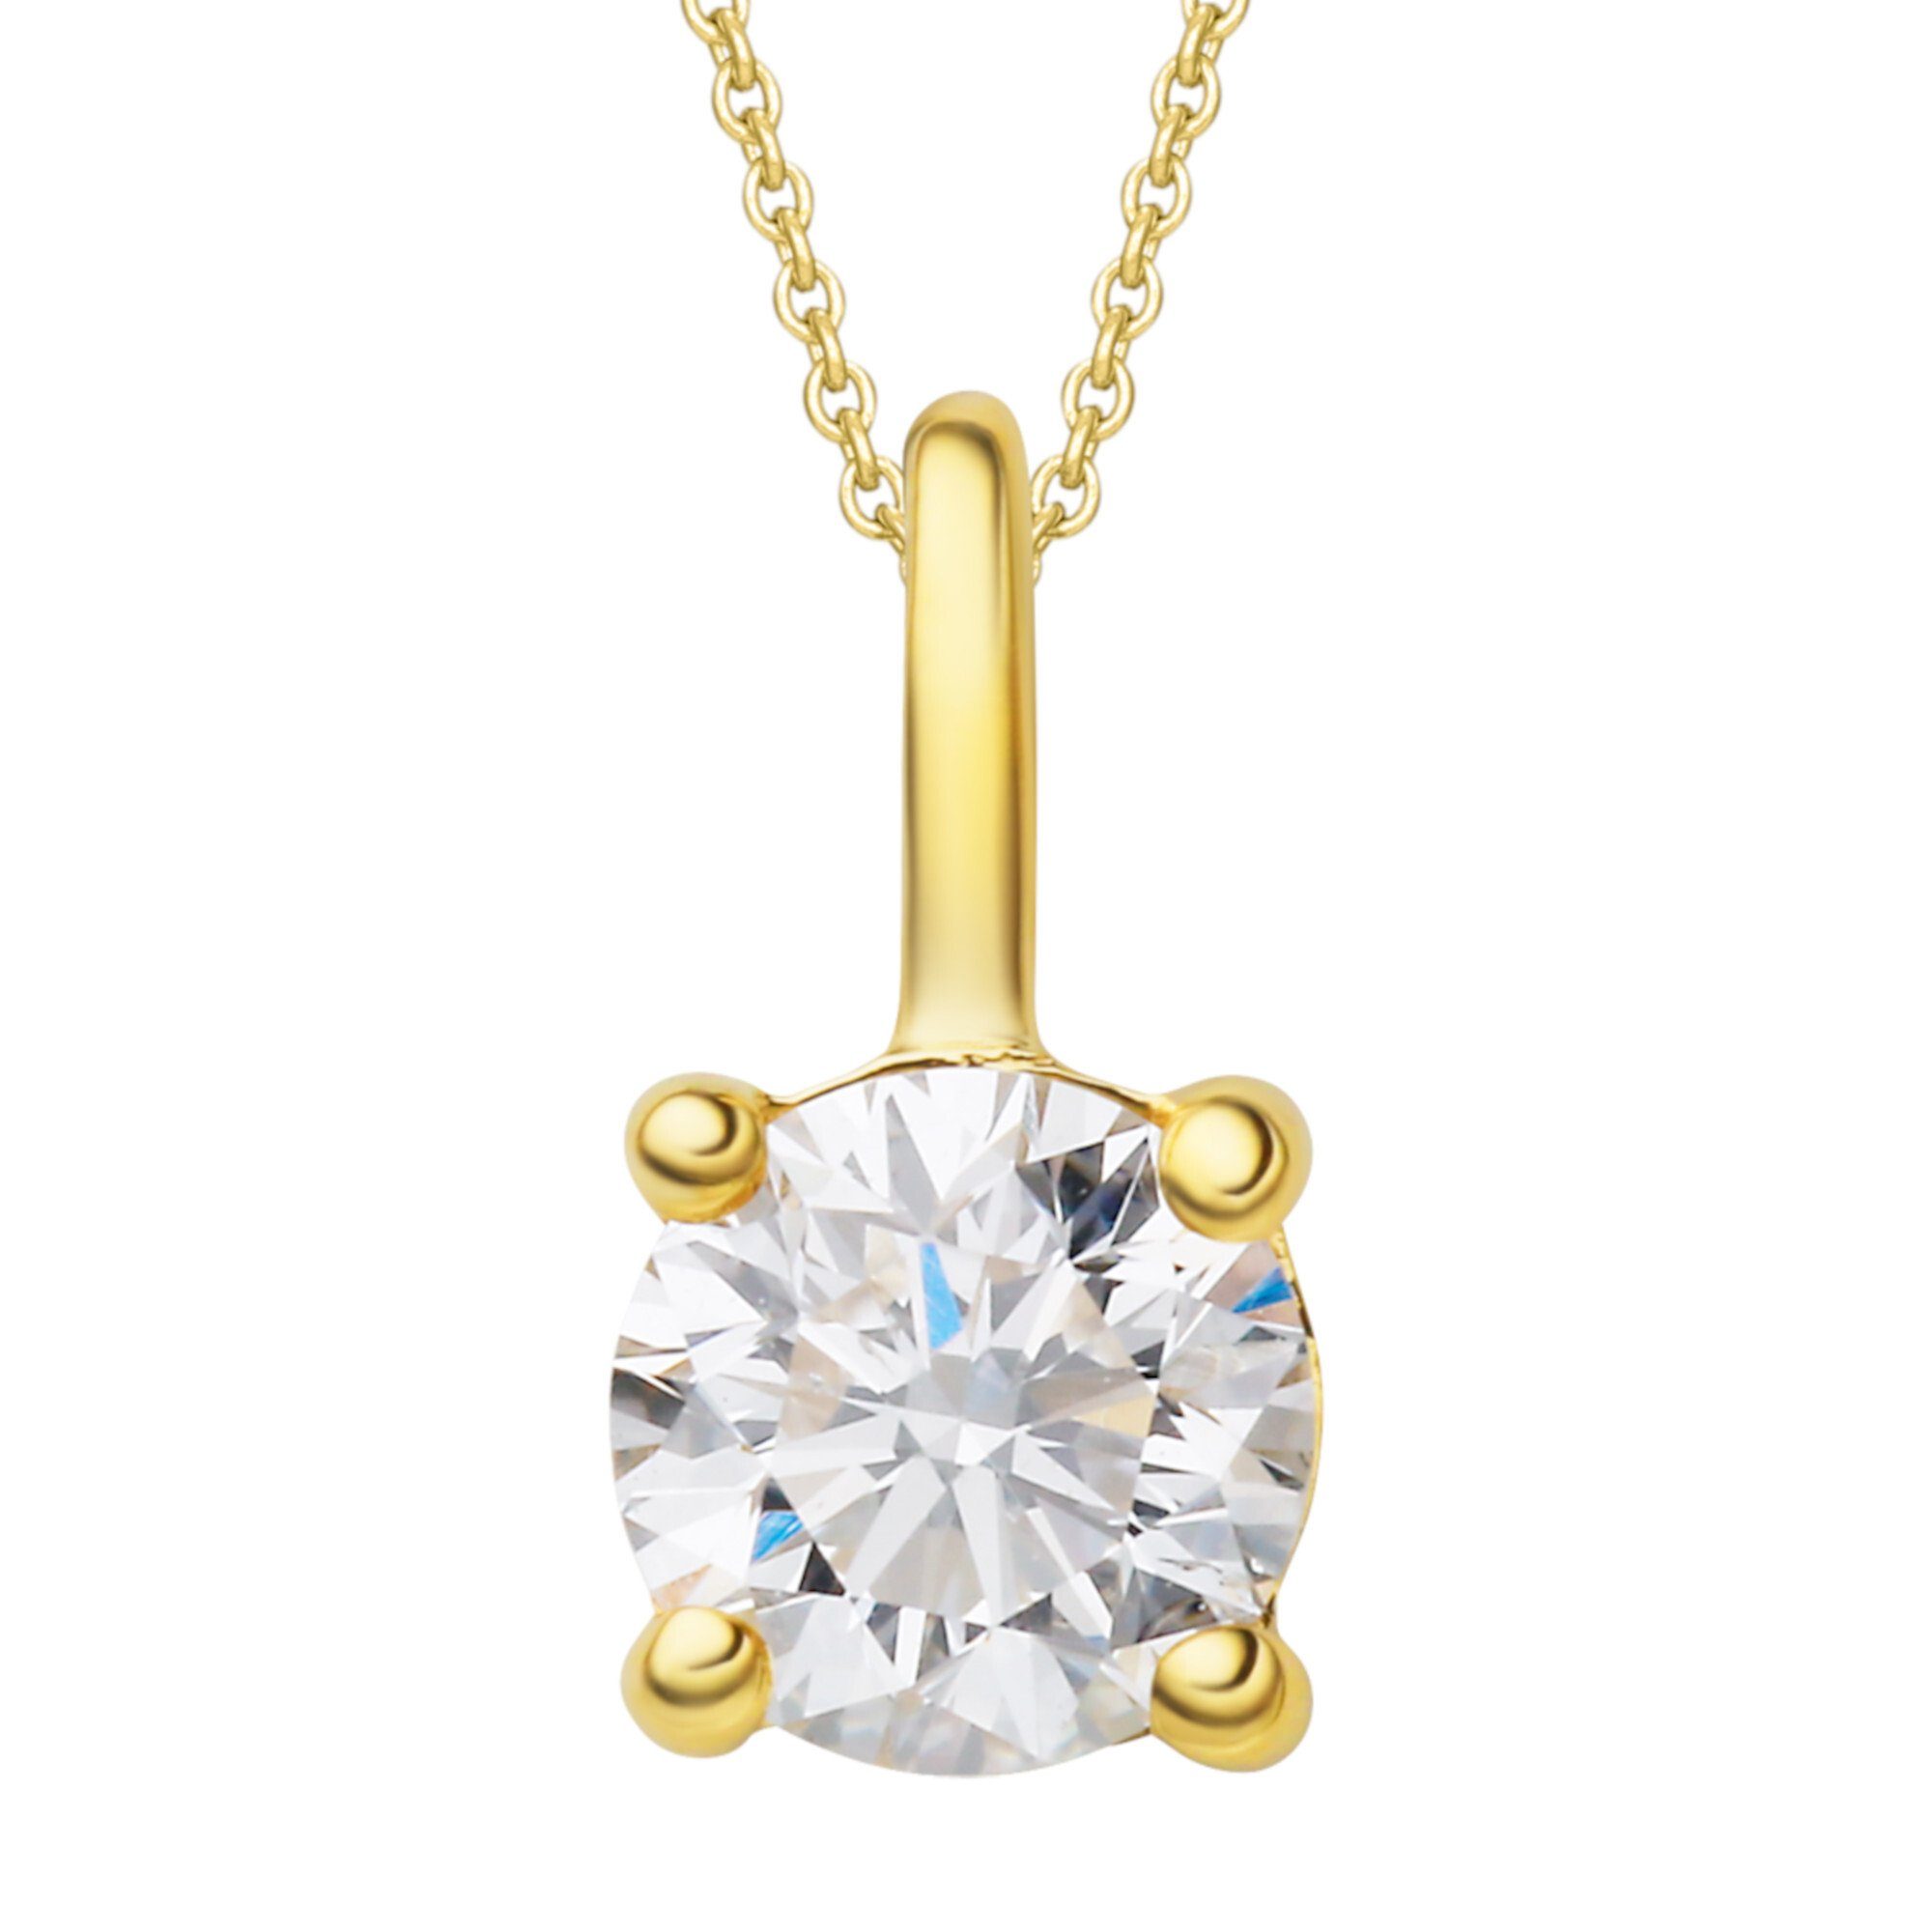 ONE ELEMENT Kettenanhänger 0.25 ct Diamant Brillant Anhänger aus 585 Gelbgold, Damen Gold Schmuck | Kettenanhänger